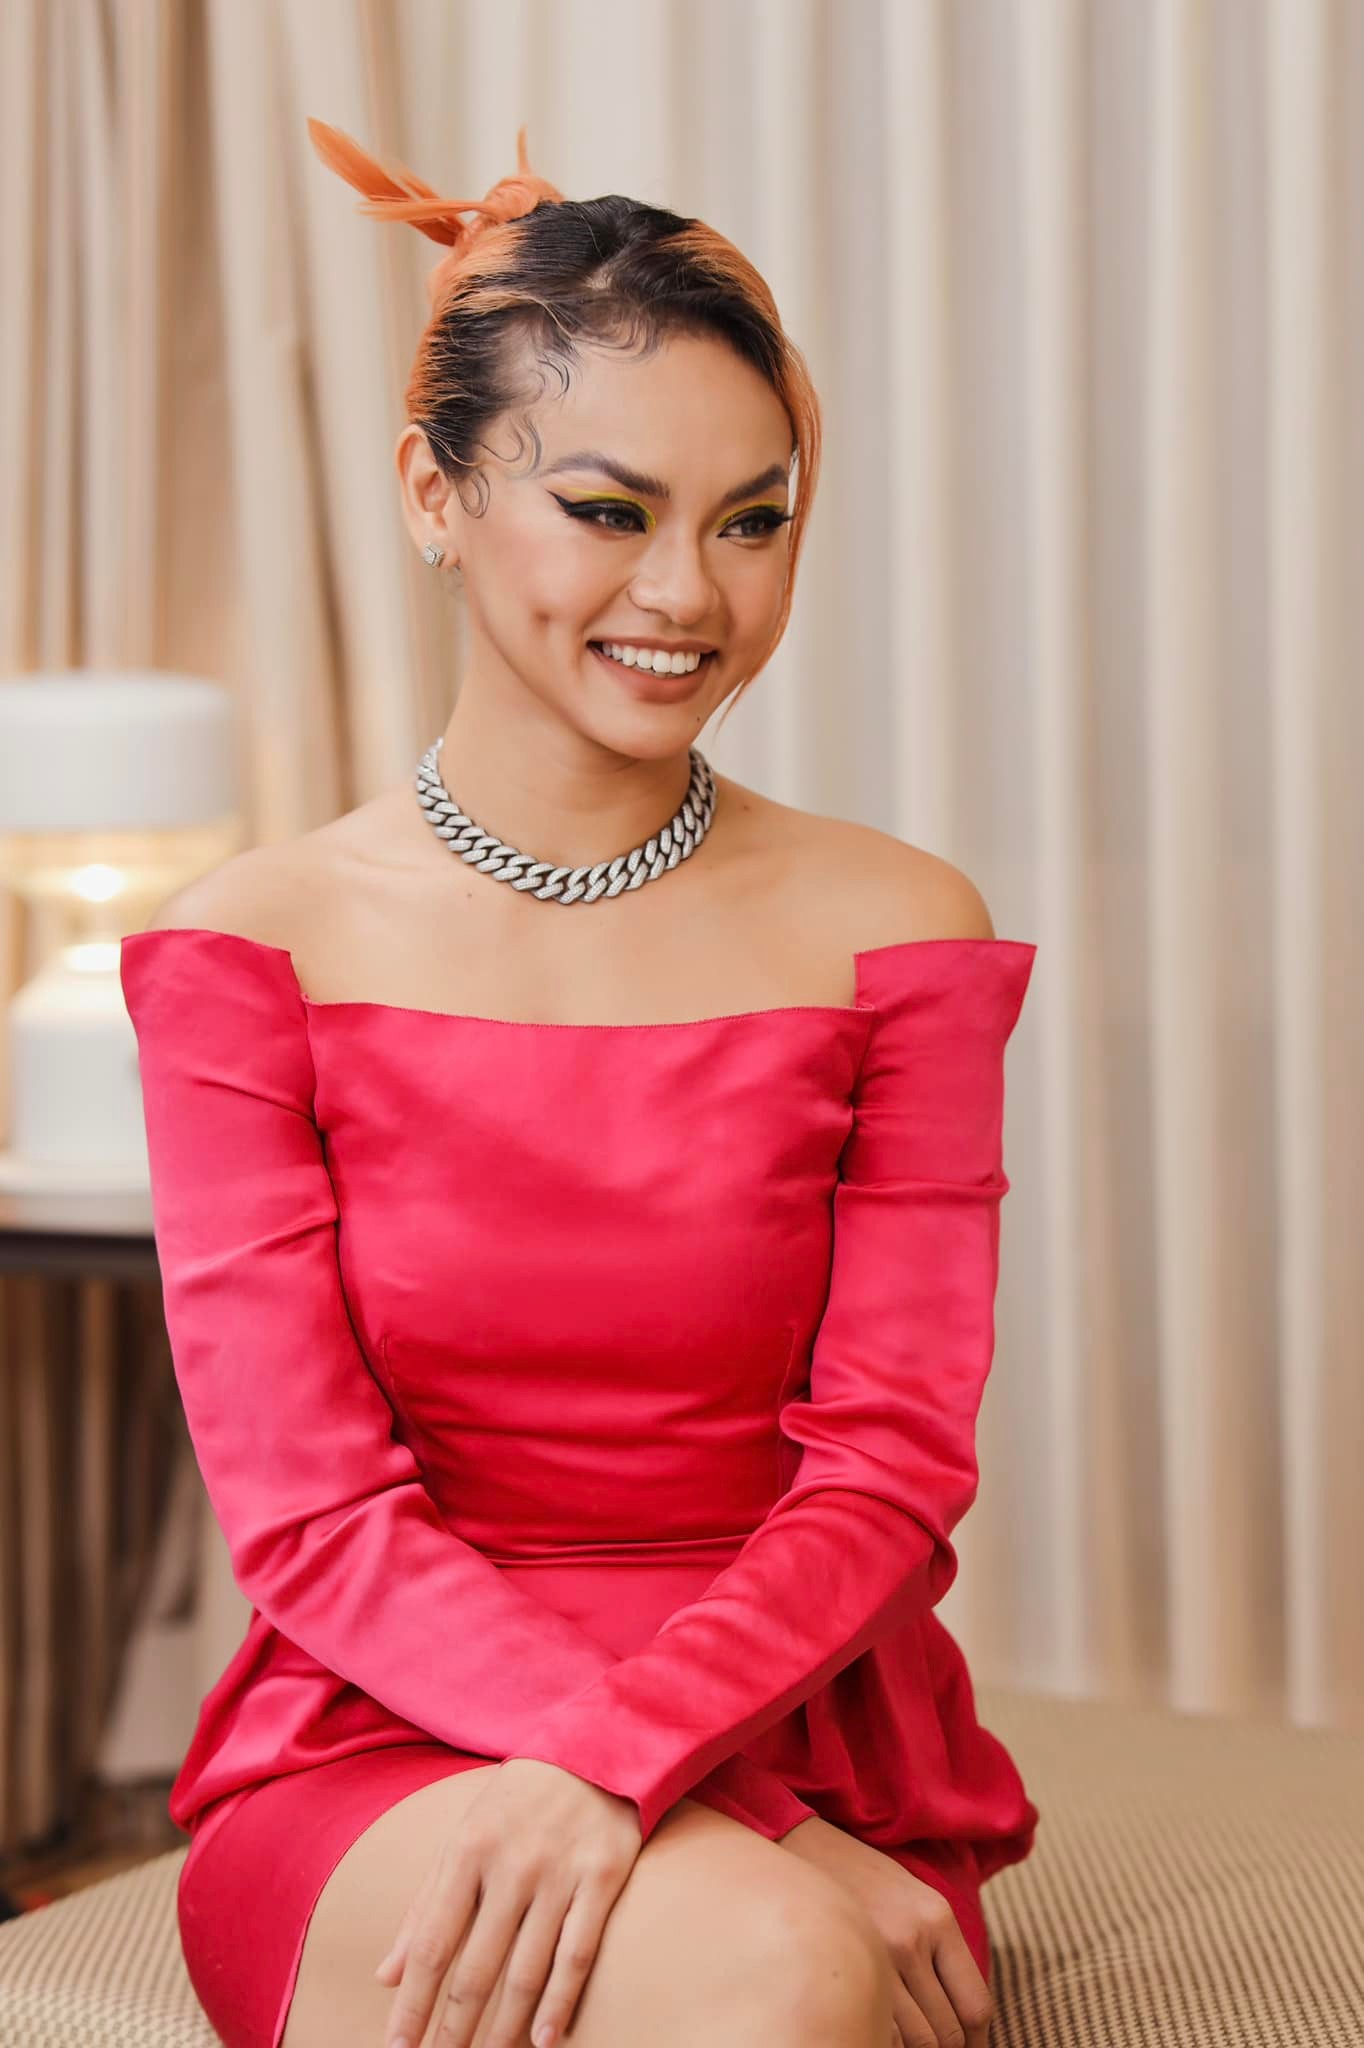 Miss Grand Vietnam: Miss Grand Vietnam là một chương trình cuộc thi sắc đẹp quốc gia đầy ấn tượng. Xem ảnh của các thí sinh để ngắm nhìn sự quyến rũ và sự tinh tế của những người đẹp đến từ khắp nơi trên đất nước. Hãy cảm nhận sự nổi bật, tự tin và xinh đẹp của các thí sinh Miss Grand Vietnam.